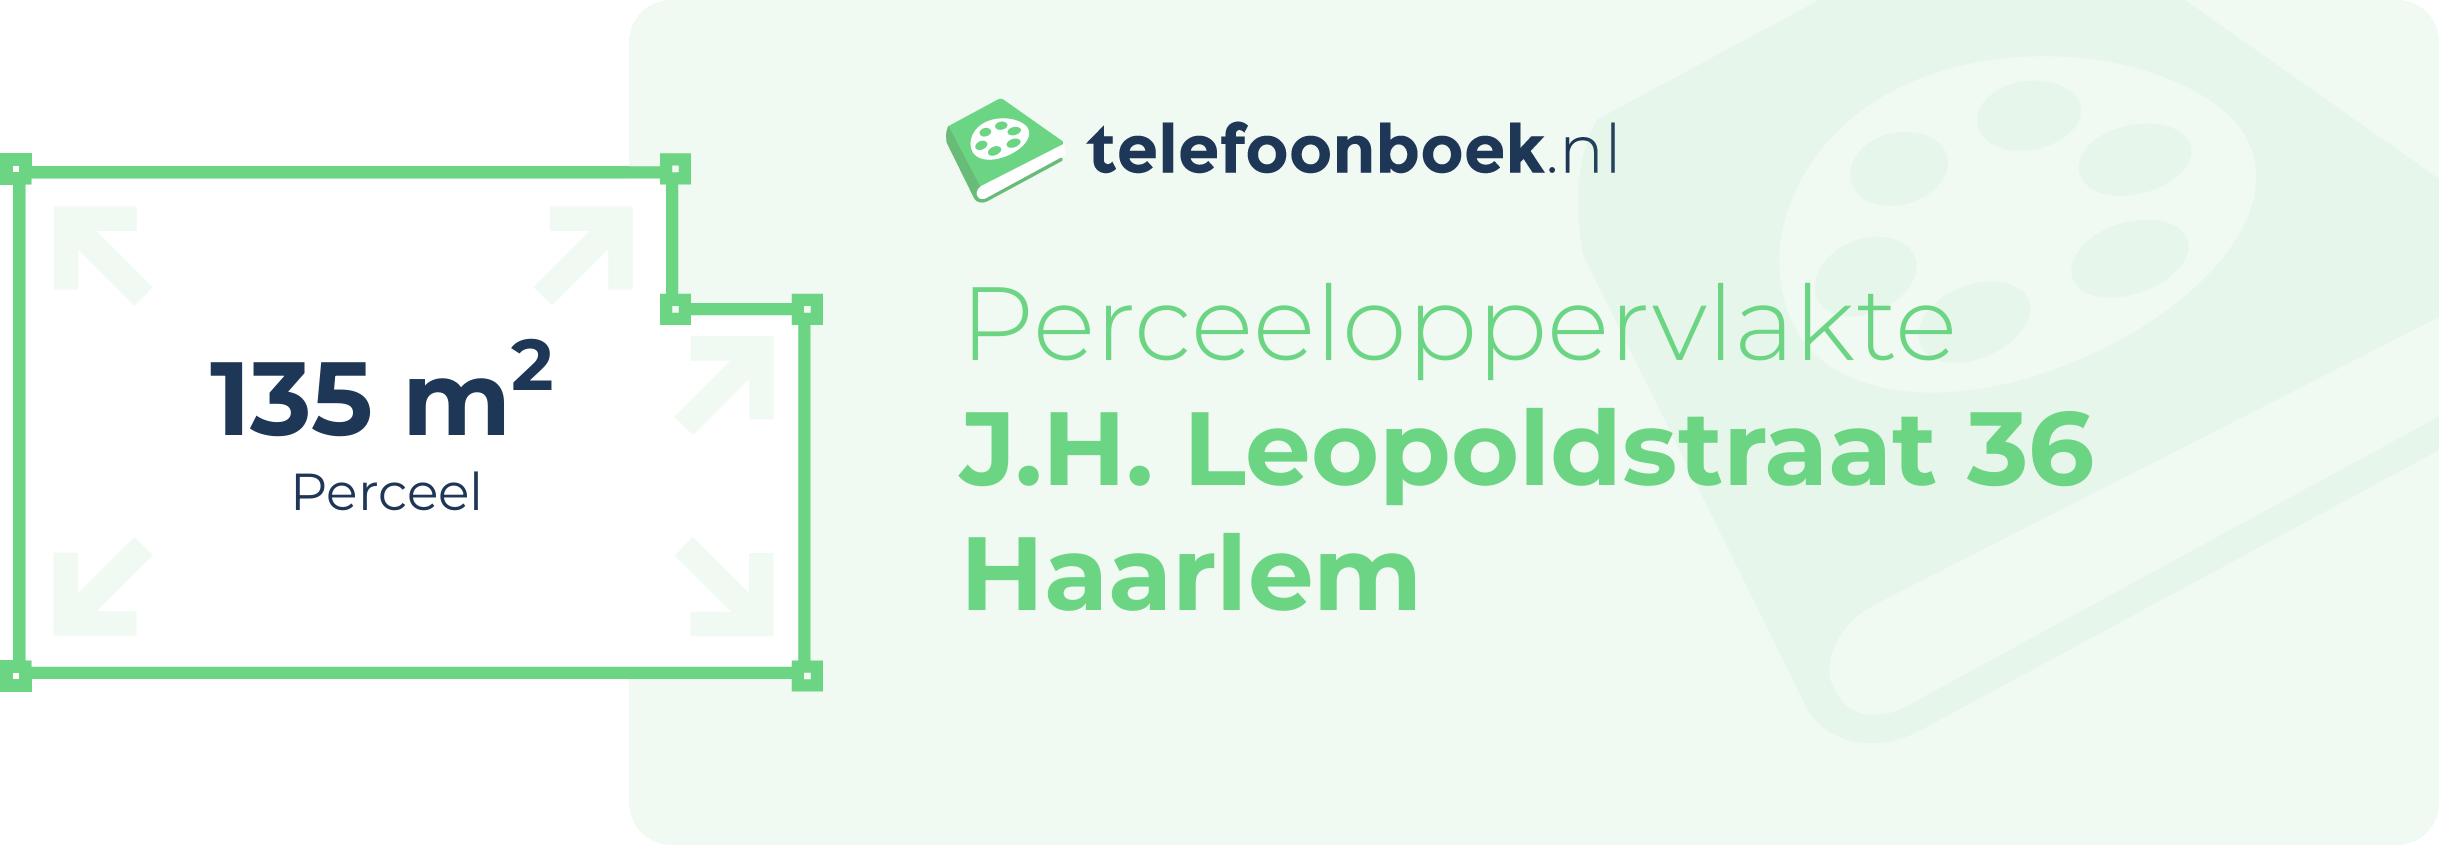 Perceeloppervlakte J.H. Leopoldstraat 36 Haarlem